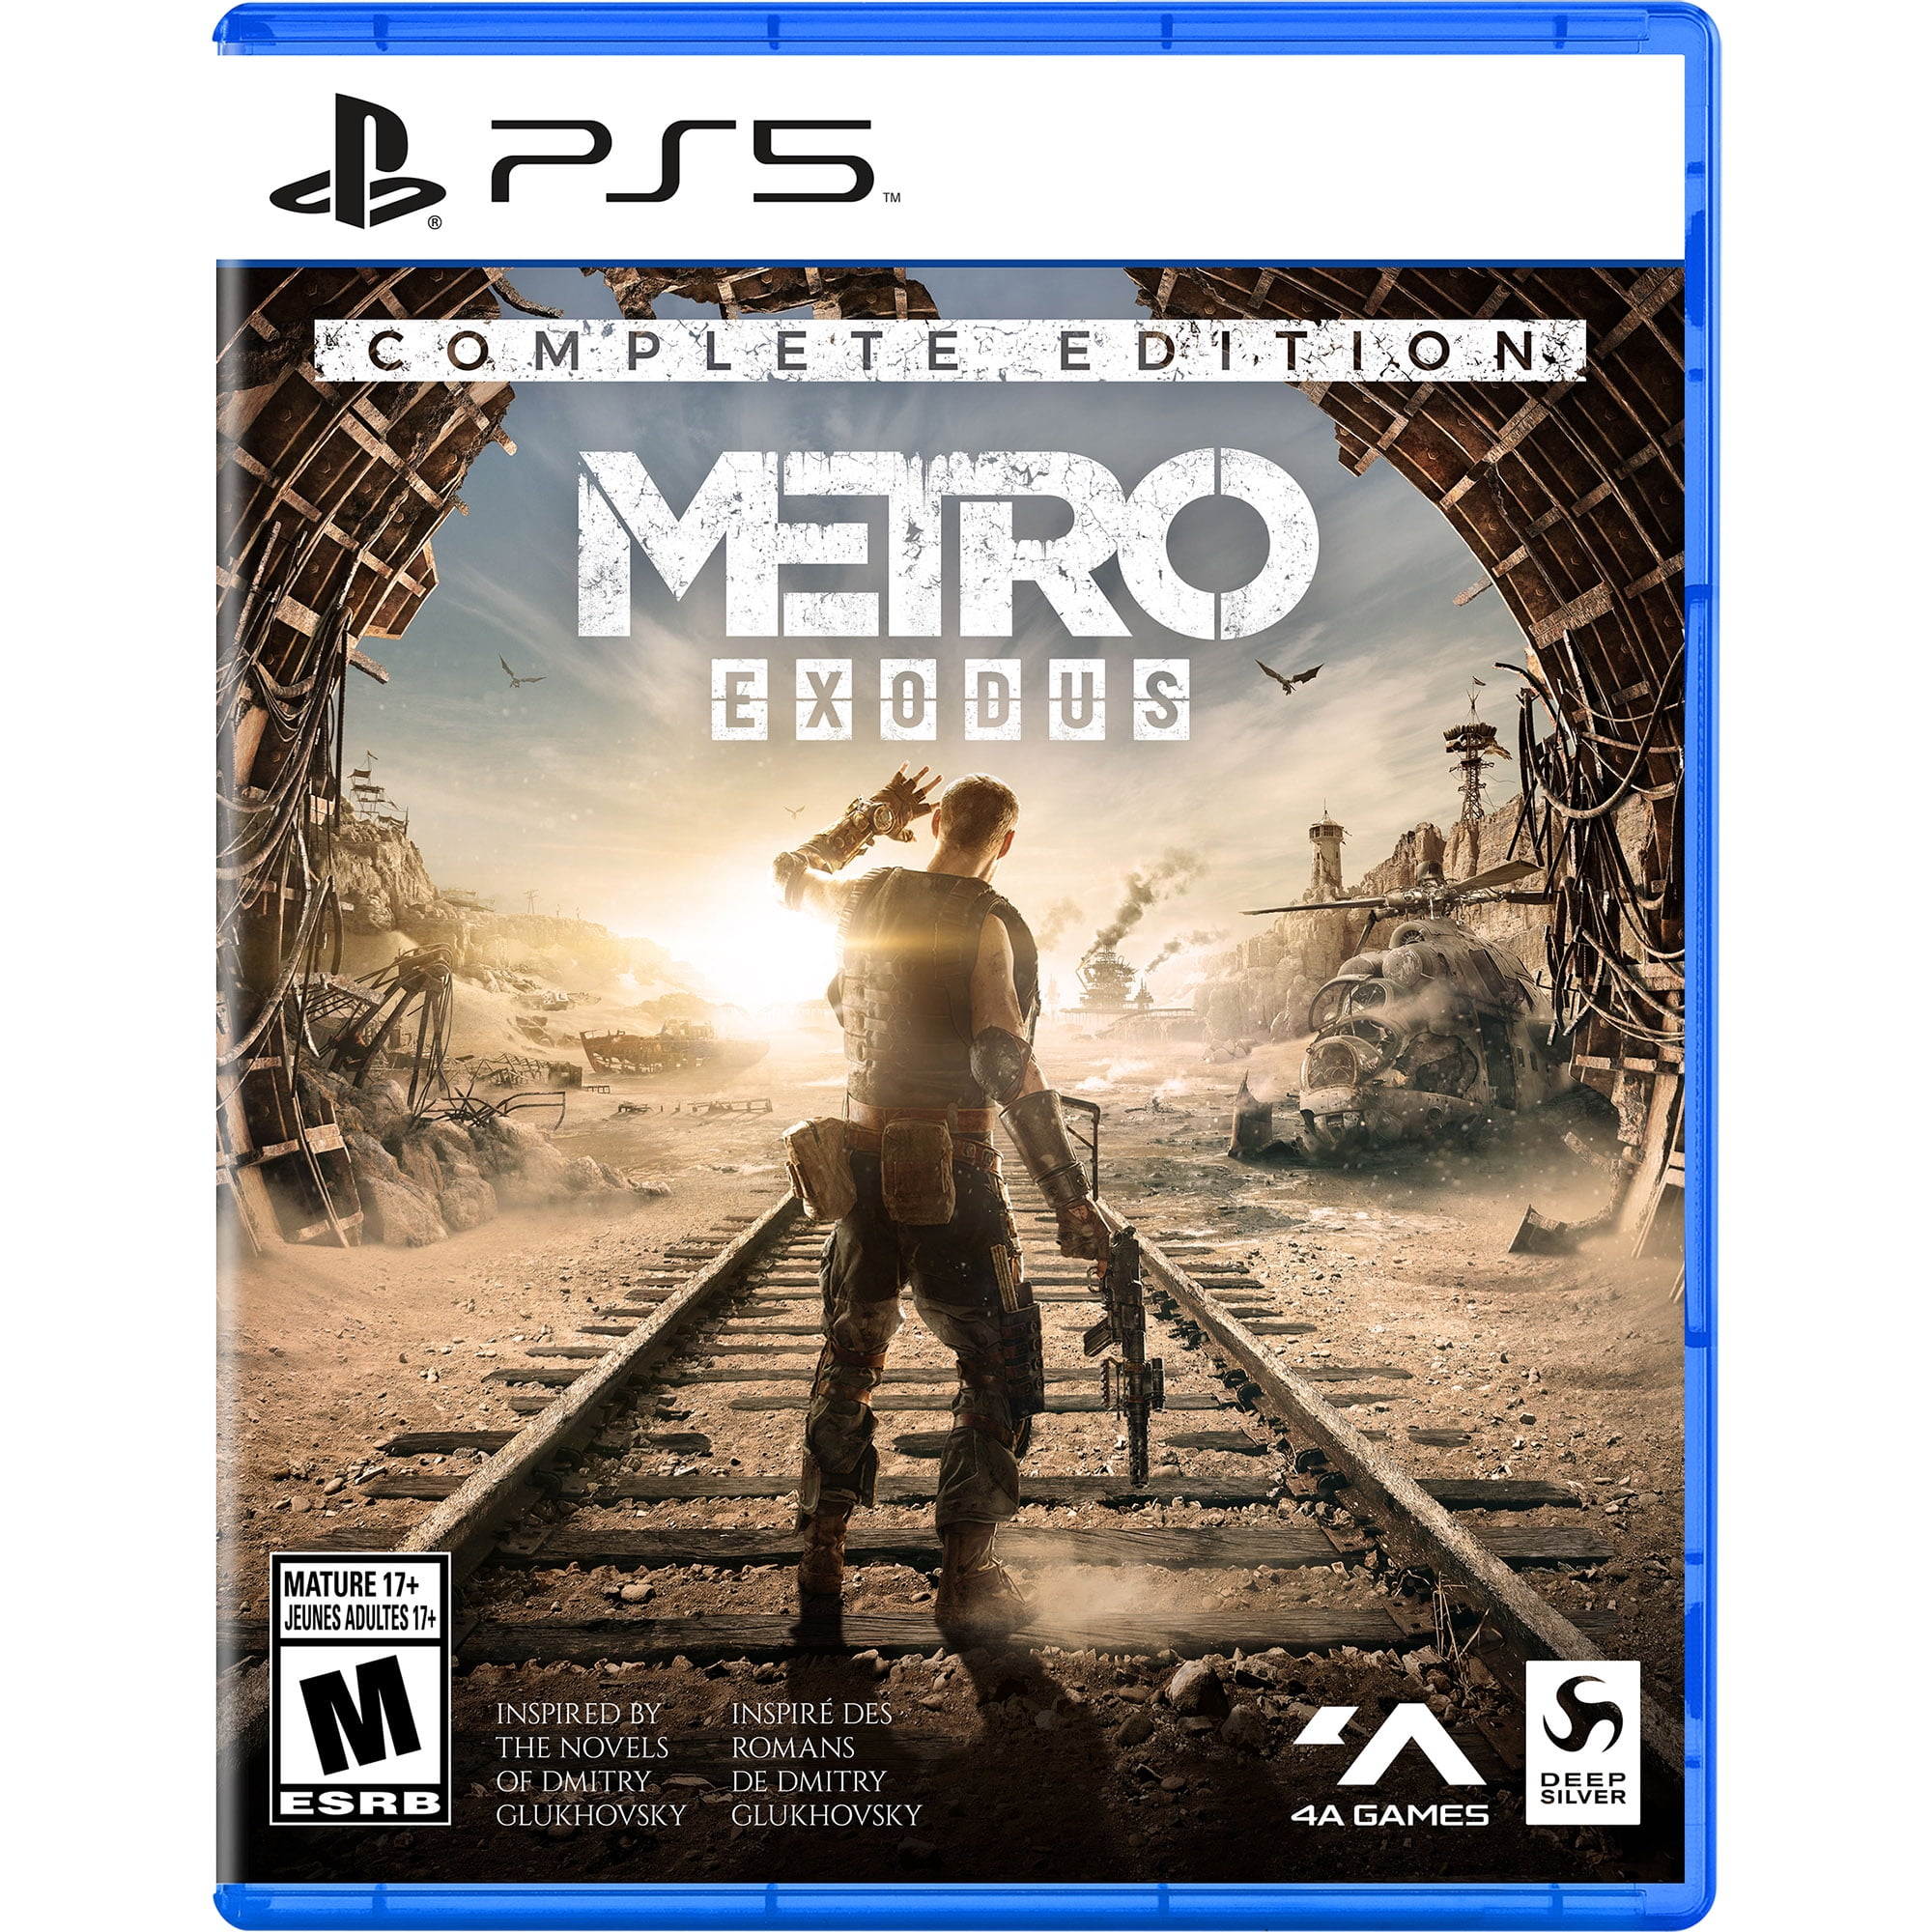 Метро исход пс. Metro Exodus ps4. Метро исход Xbox one. Метро исход полное издание. Игры на плейстейшен 5.